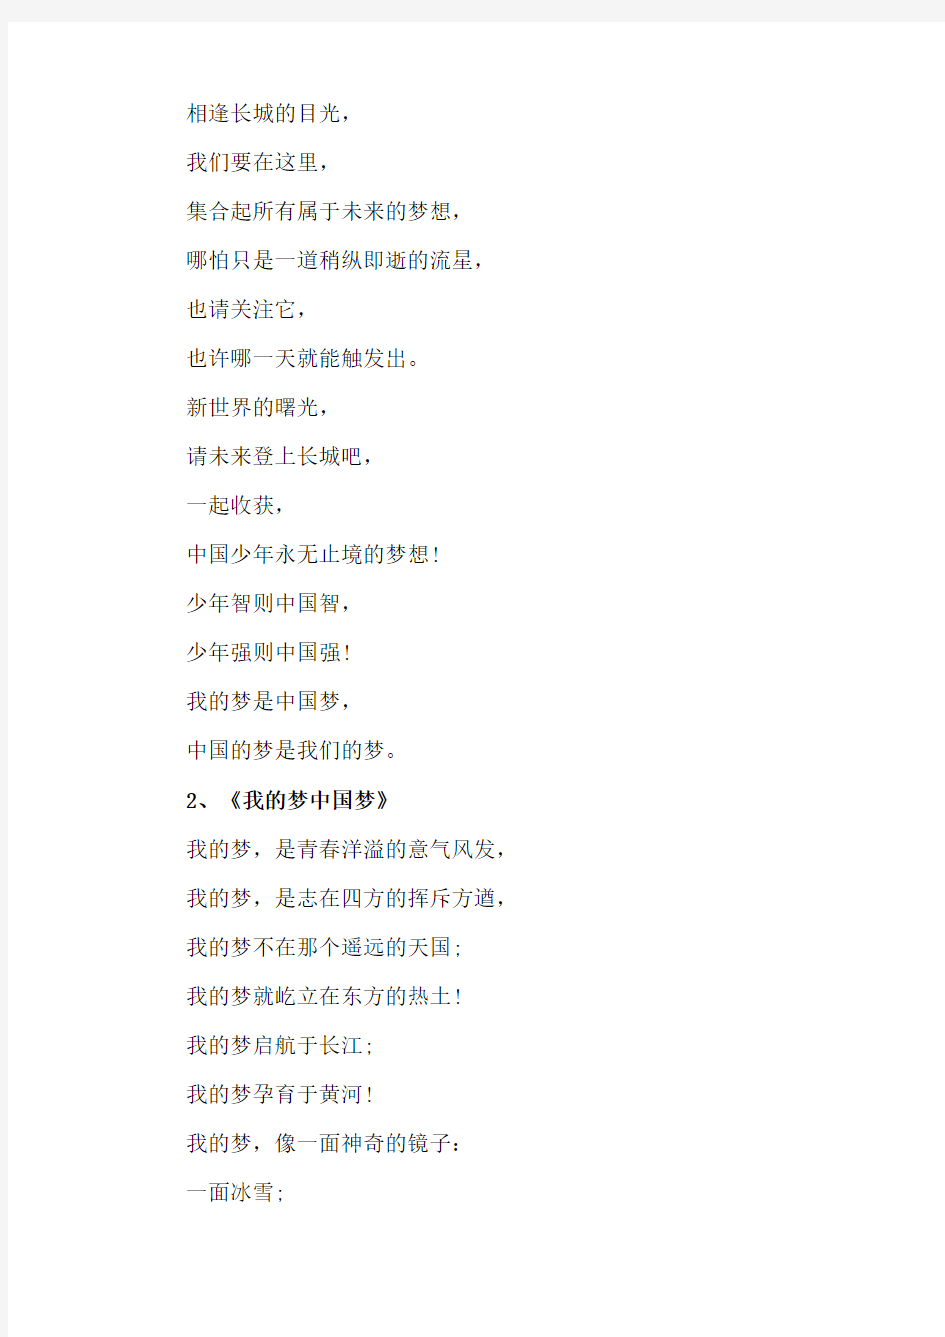 中国梦我的梦诗歌10首